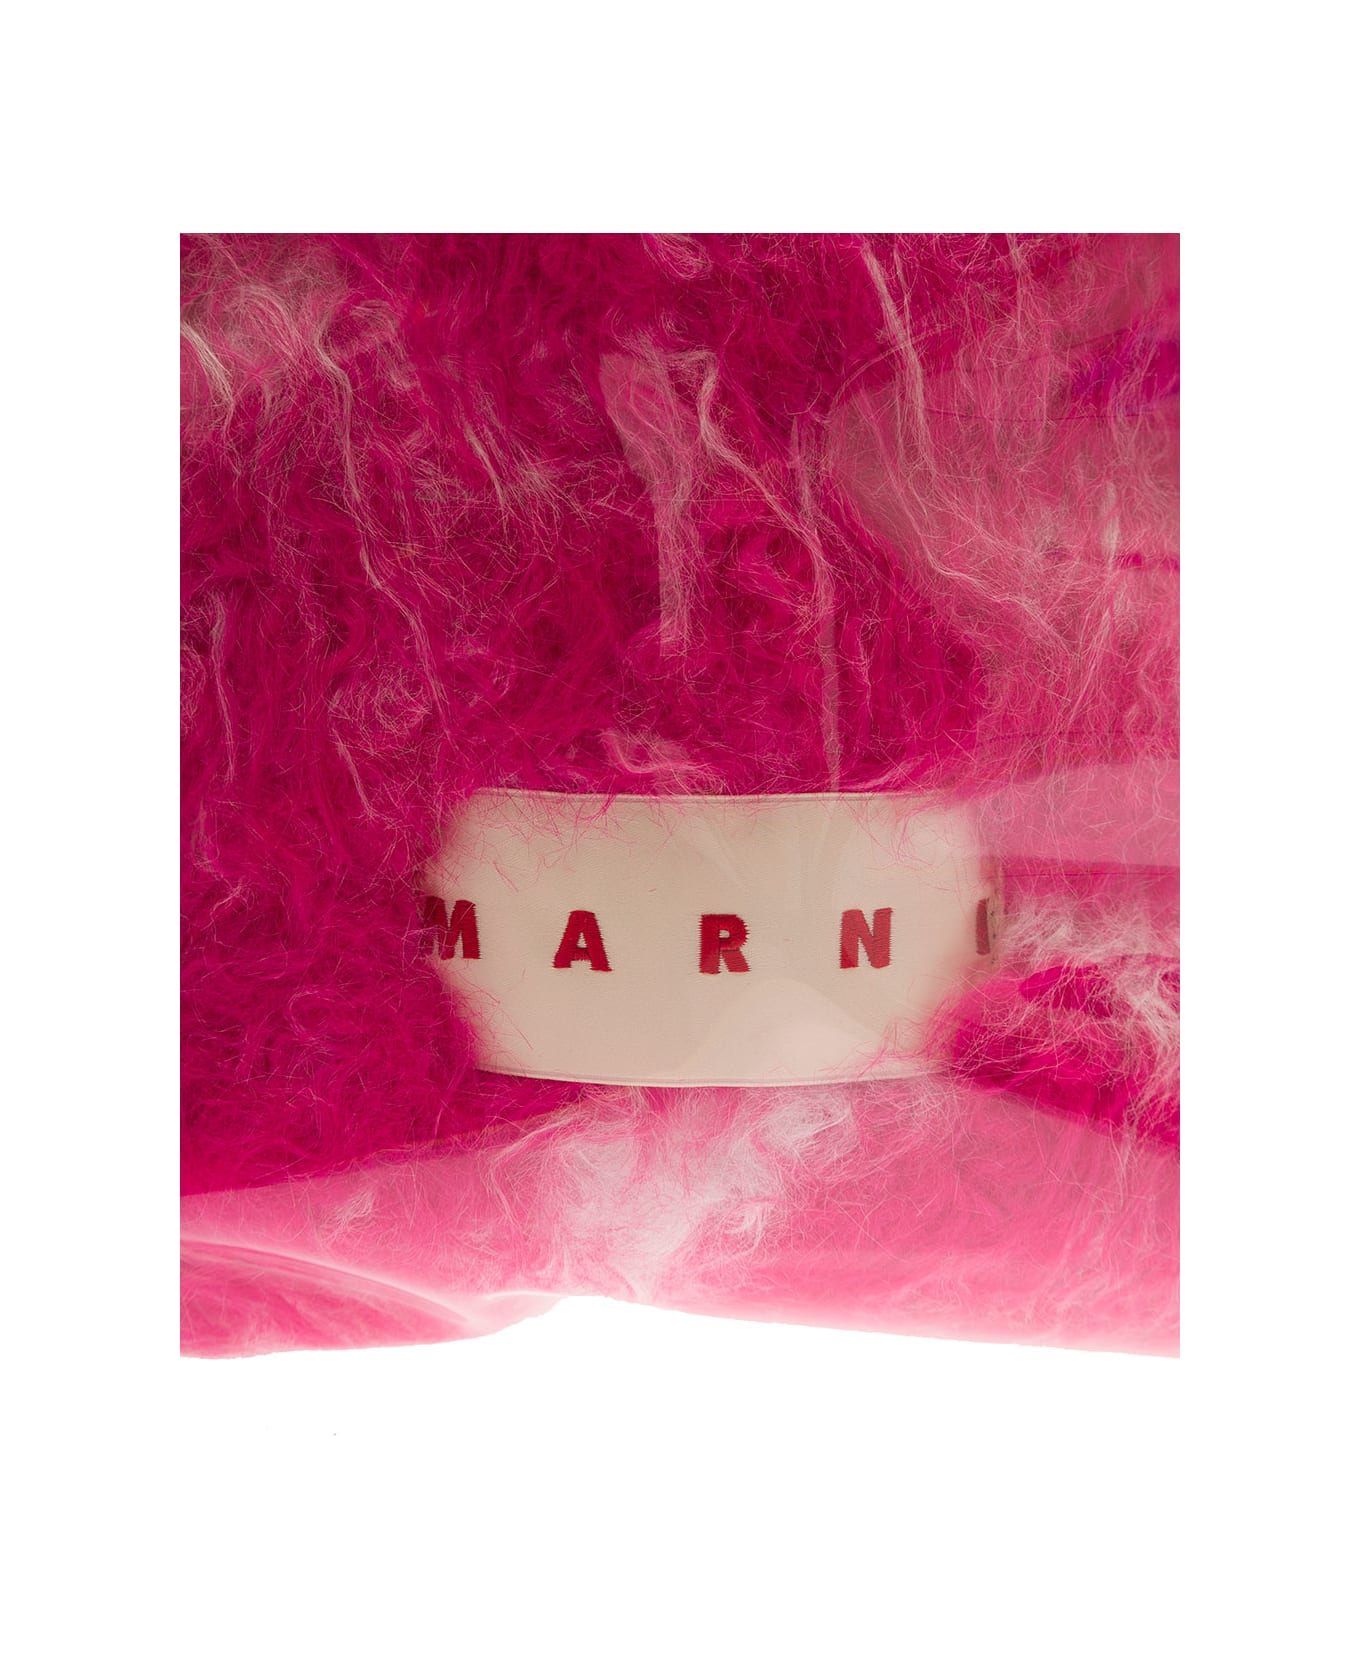 Marni Hot Pink Faux Fur Tote Bag - Fuchsia